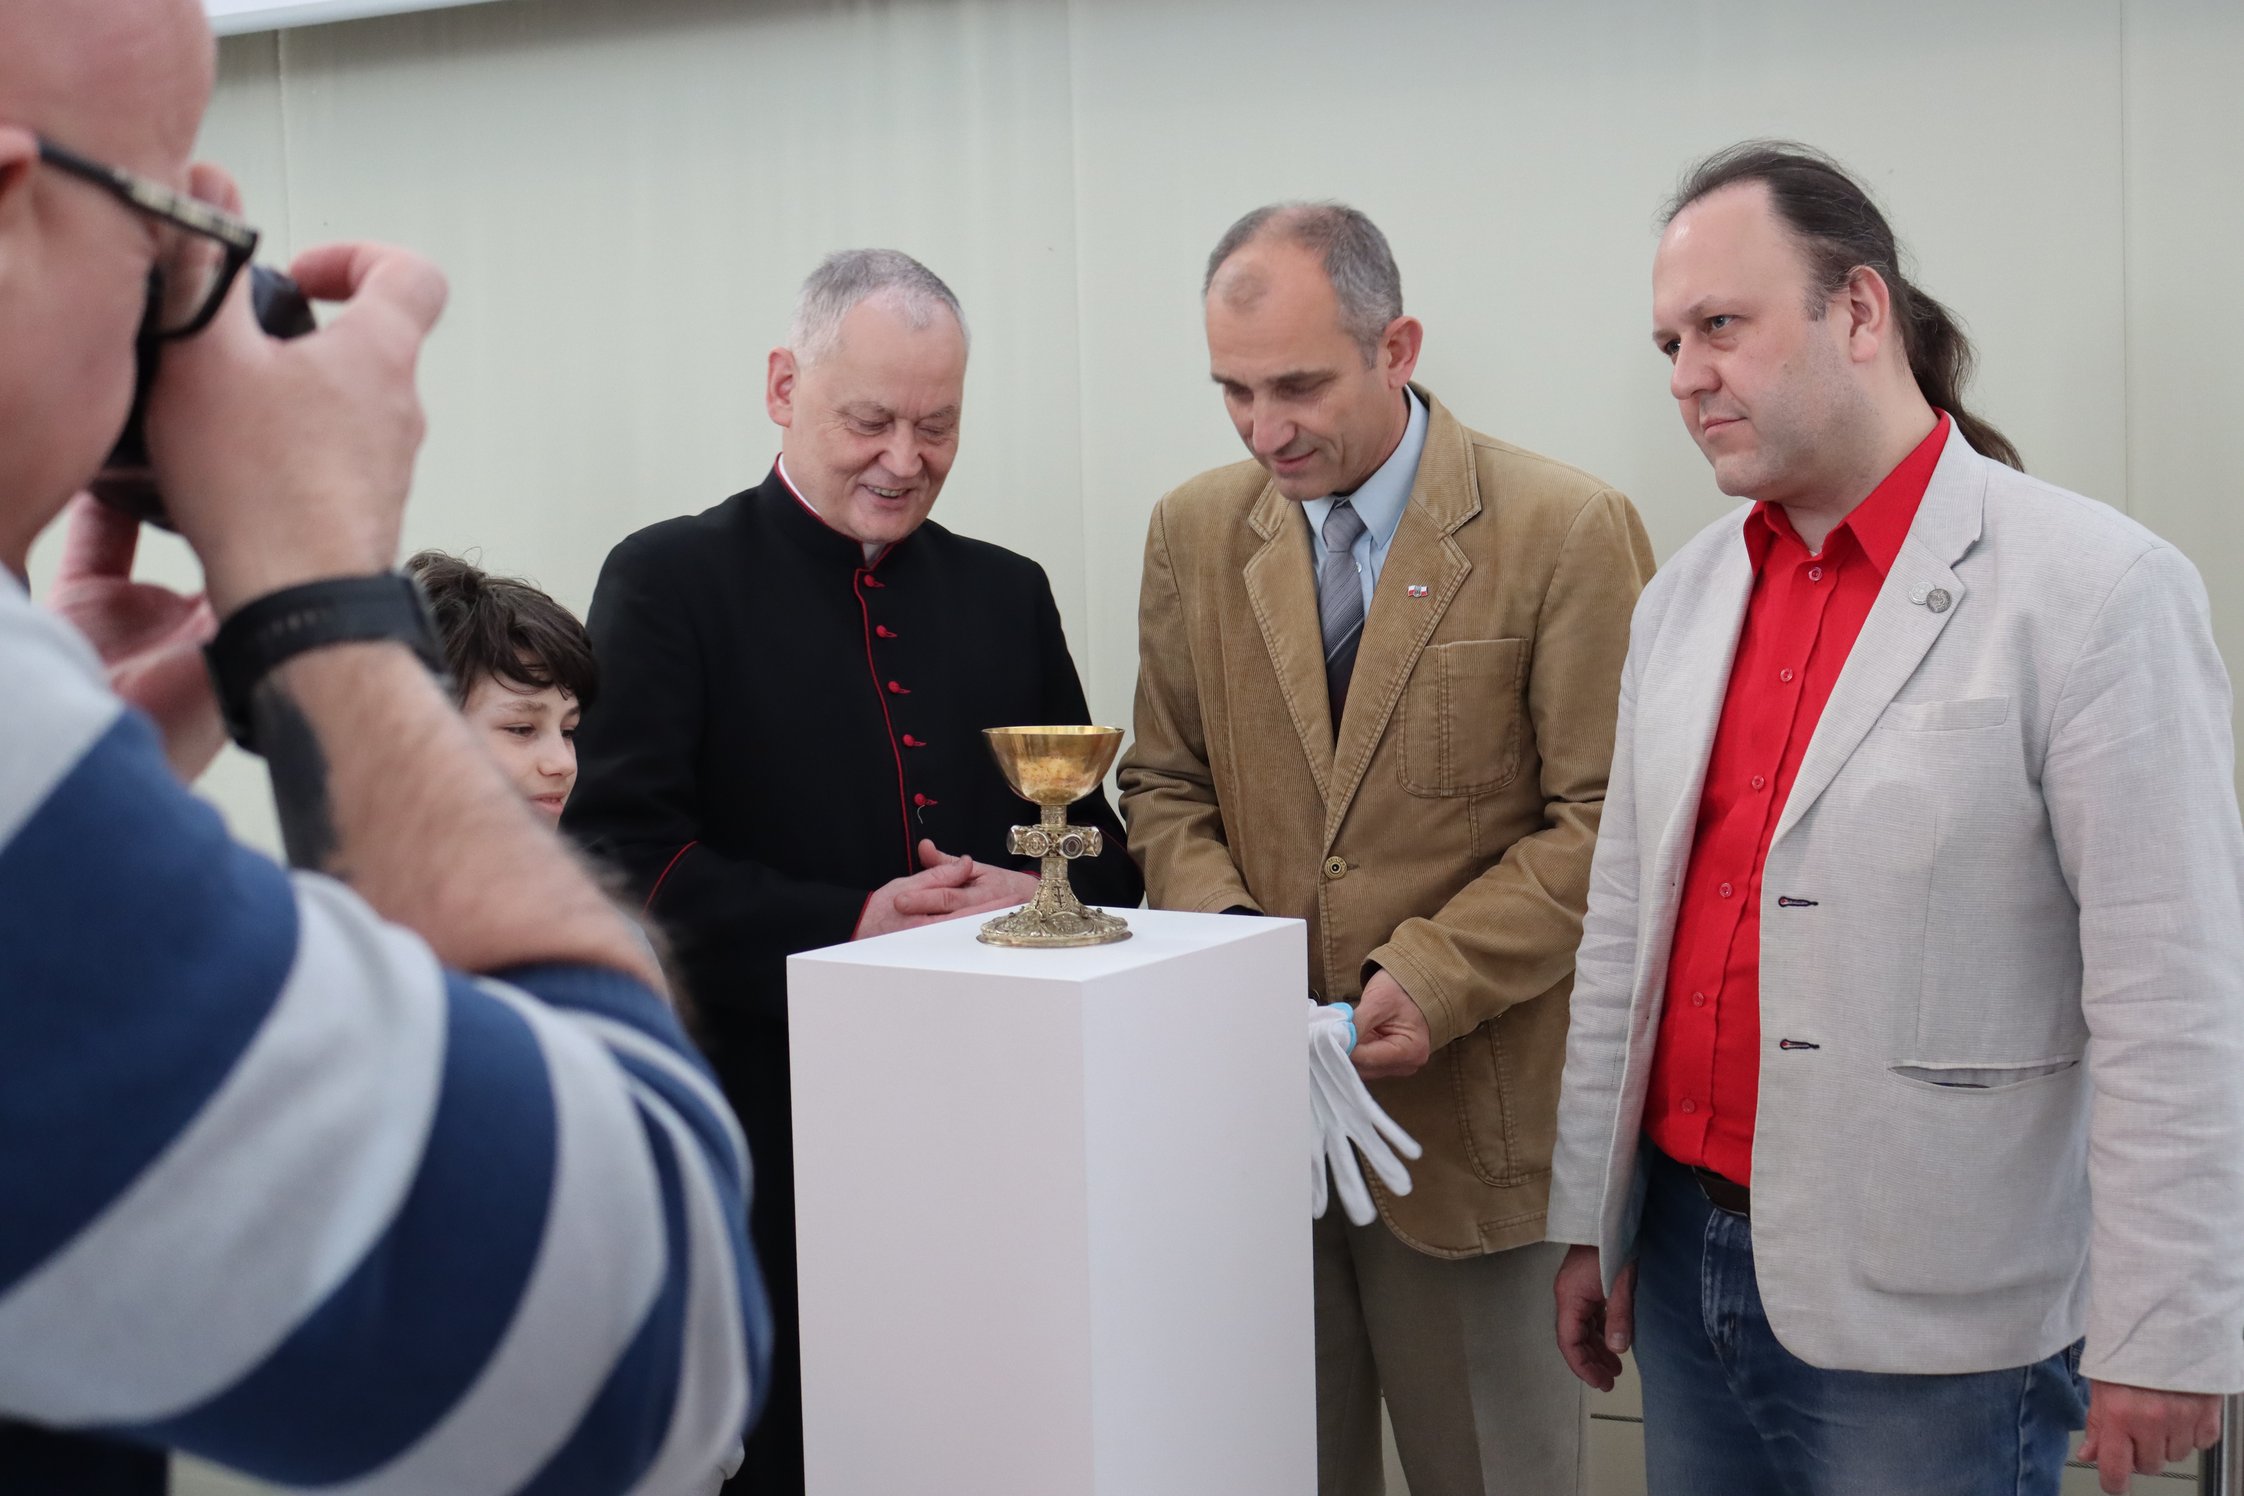 Propst Grzegorz Legutko und die Stettiner Historiker Dr. Piotr Briks und Dr. Paweł Migdalski betrachten den Naugarder Kelch (Foto: J. Kruse).